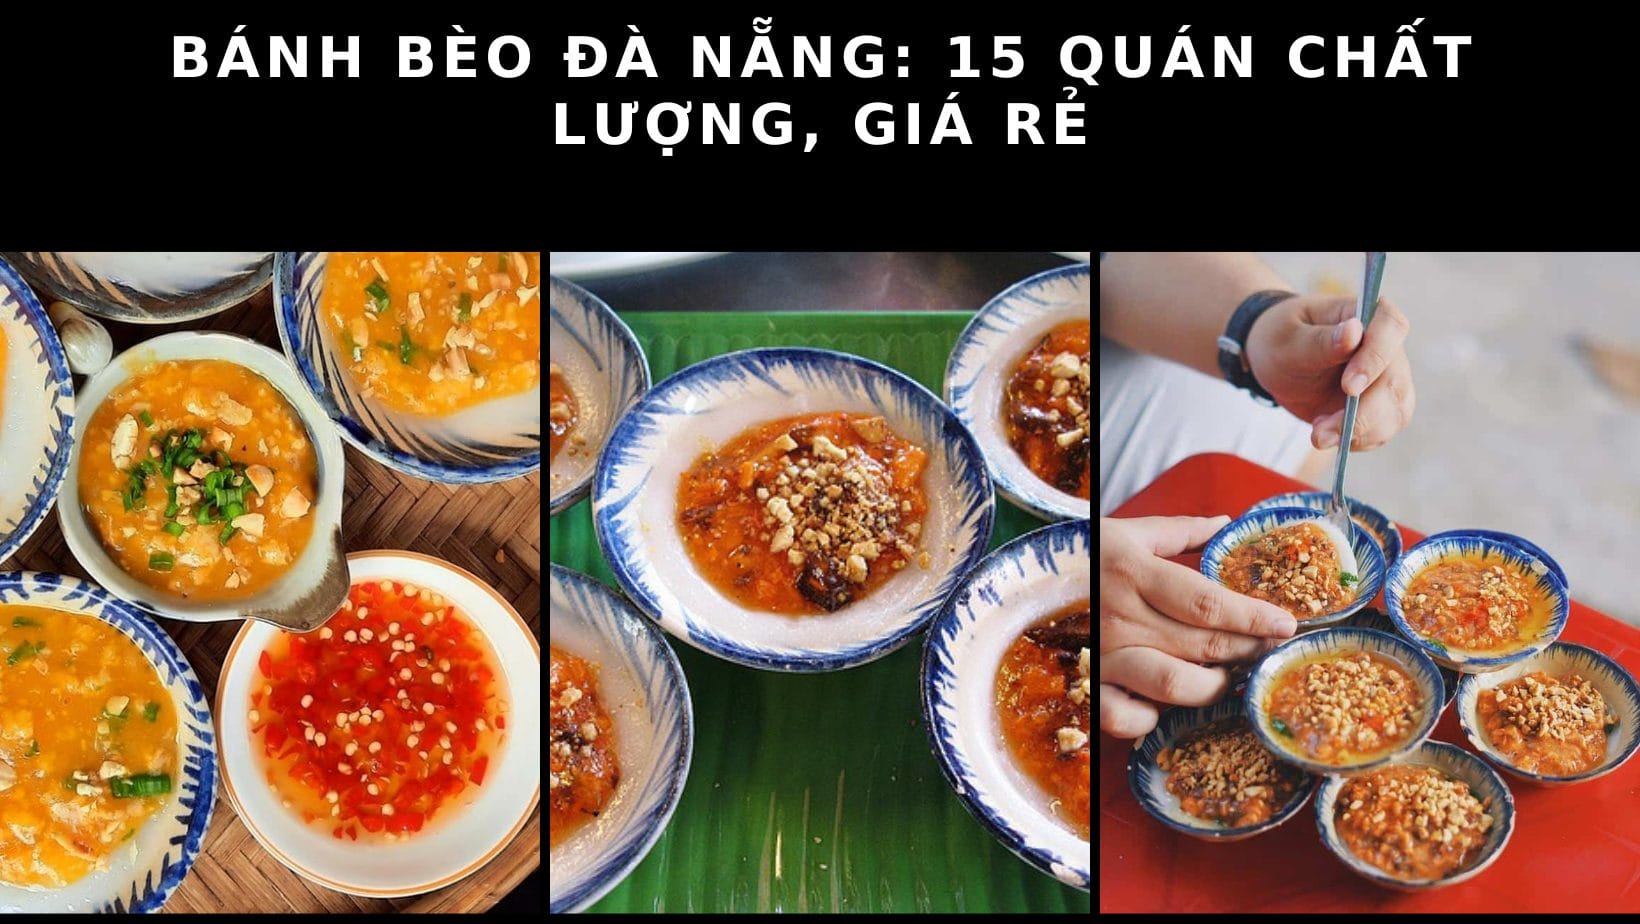 Bánh bèo Đà Nẵng: 15 quán chất lượng, giá rẻ